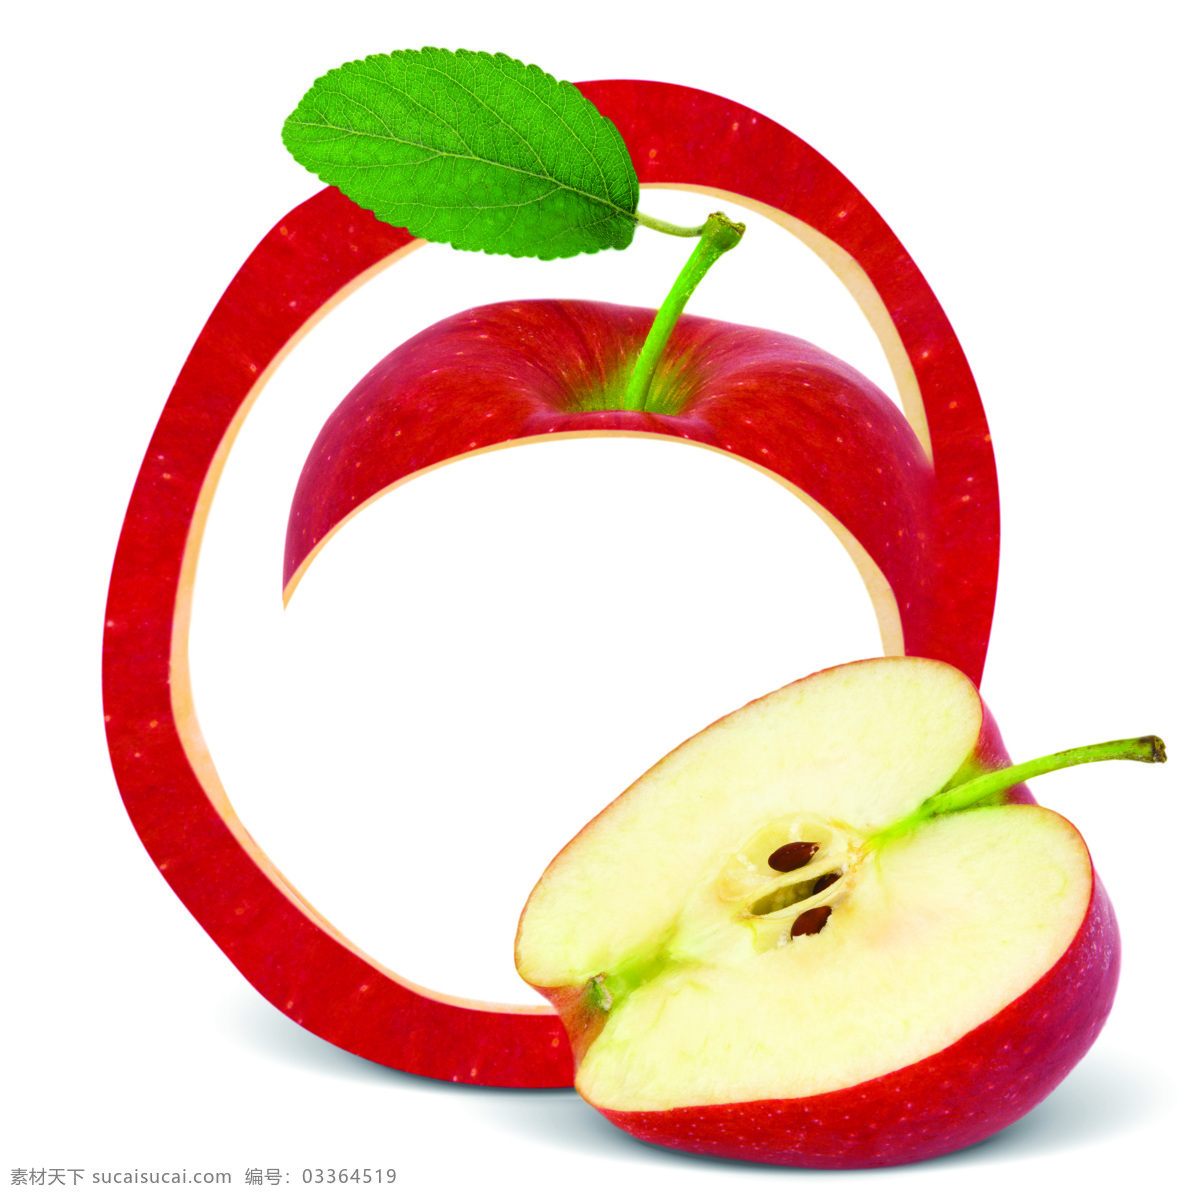 创意 水果 新鲜水果 果实 创意水果 果皮 苹果 水果图片 餐饮美食